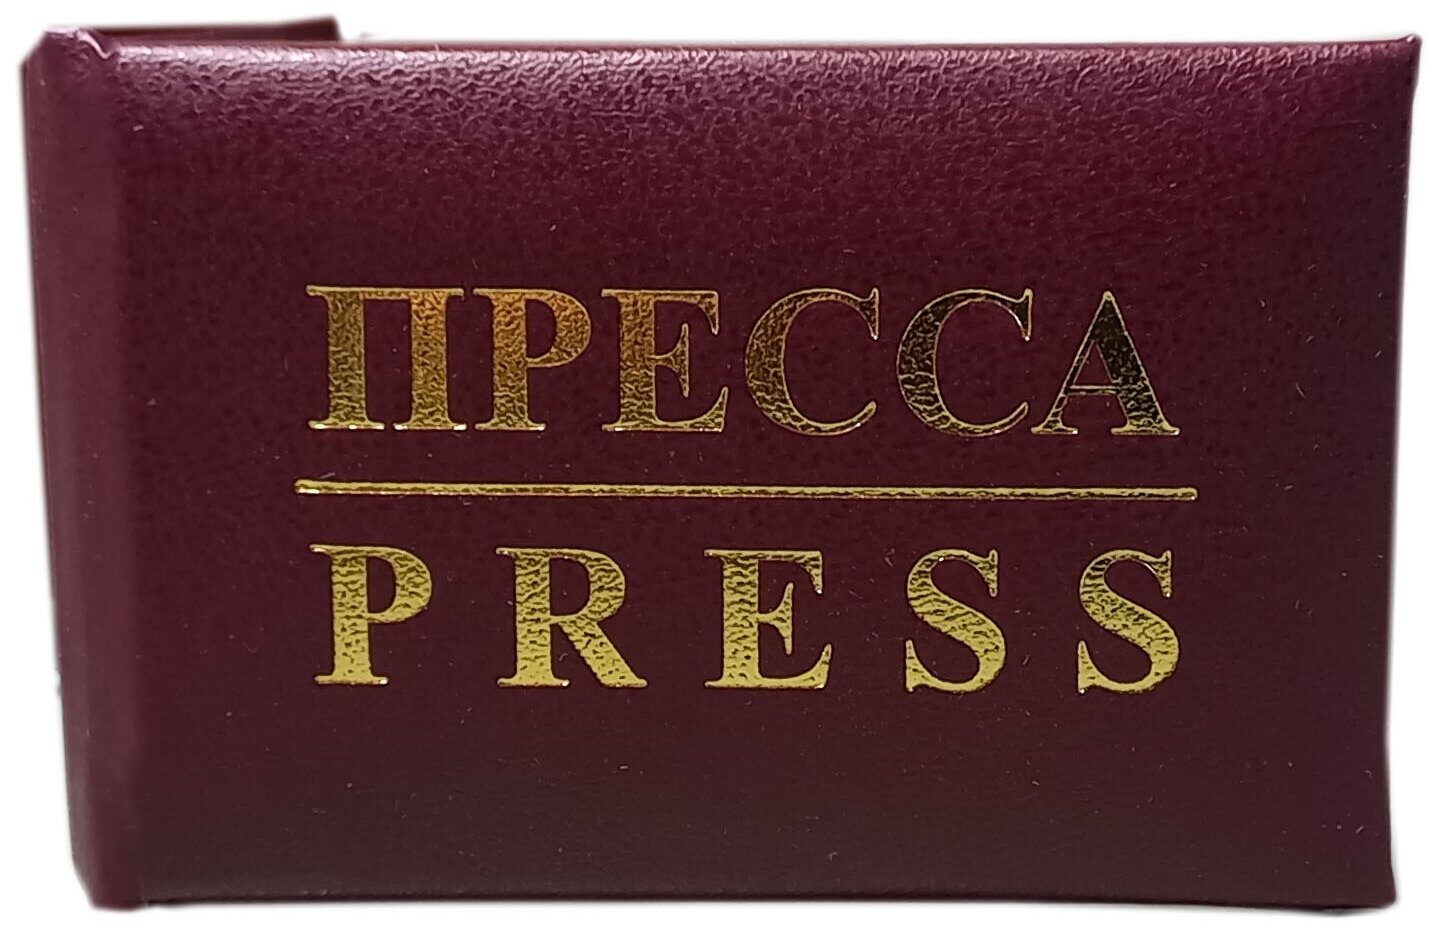 Бланк удостоверения Пресса (Press), мягкое (дутое) цветная вклейка, размер 65х95 мм.